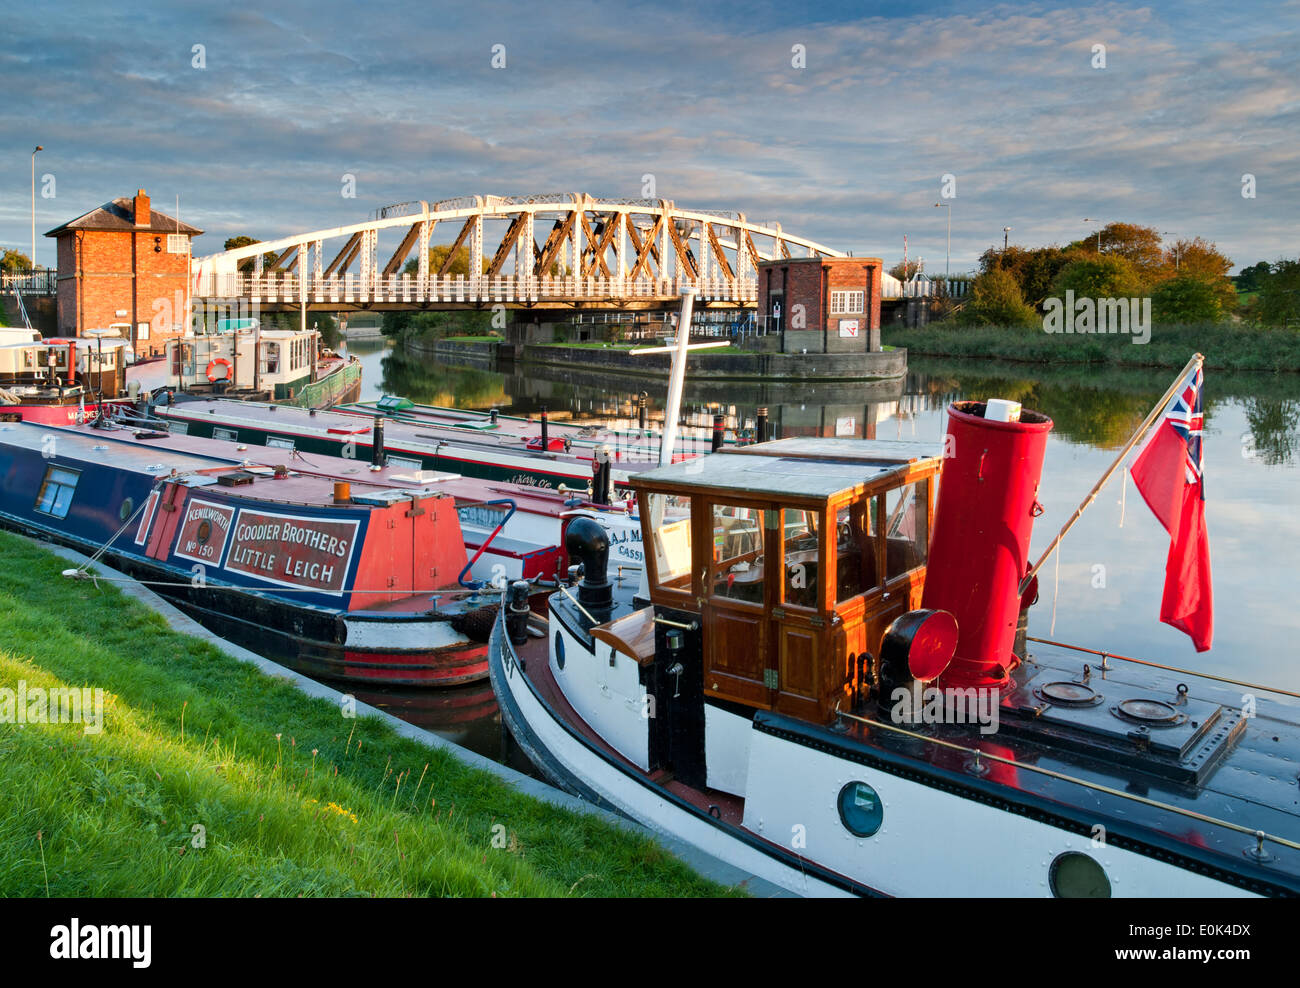 Old Steamboat amarré sur la rivière Weaver ci-dessous Acton Bridge, Acton Bridge, Cheshire, England, UK Banque D'Images